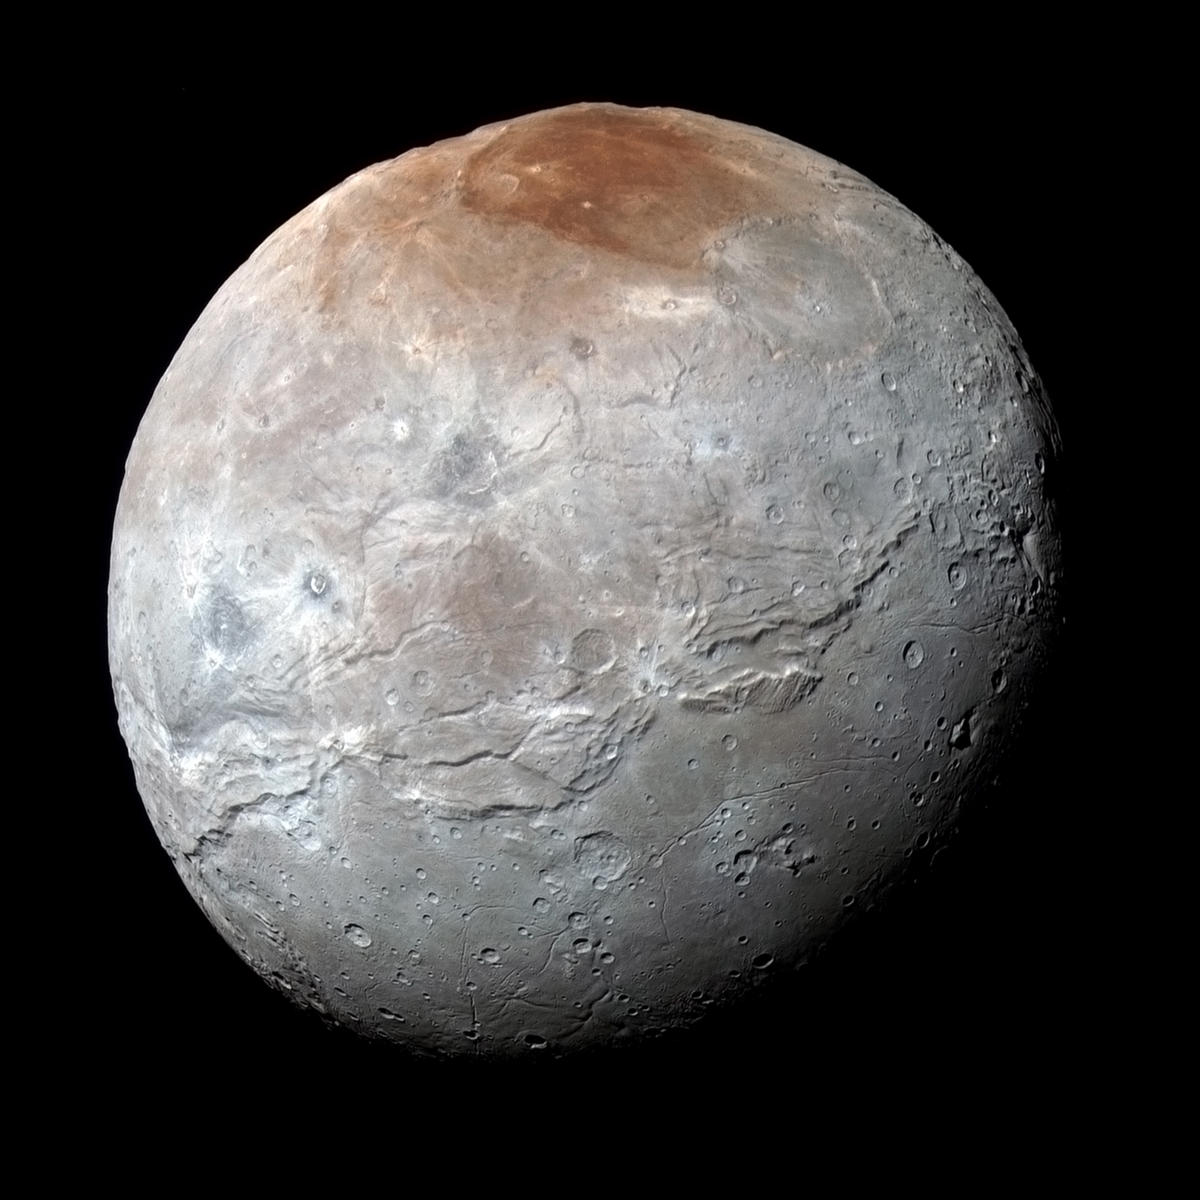 ‘Tutup’ Merah Misterius di Bulan Pluto Bisa Jadi ‘Puingan Organik Lengket’